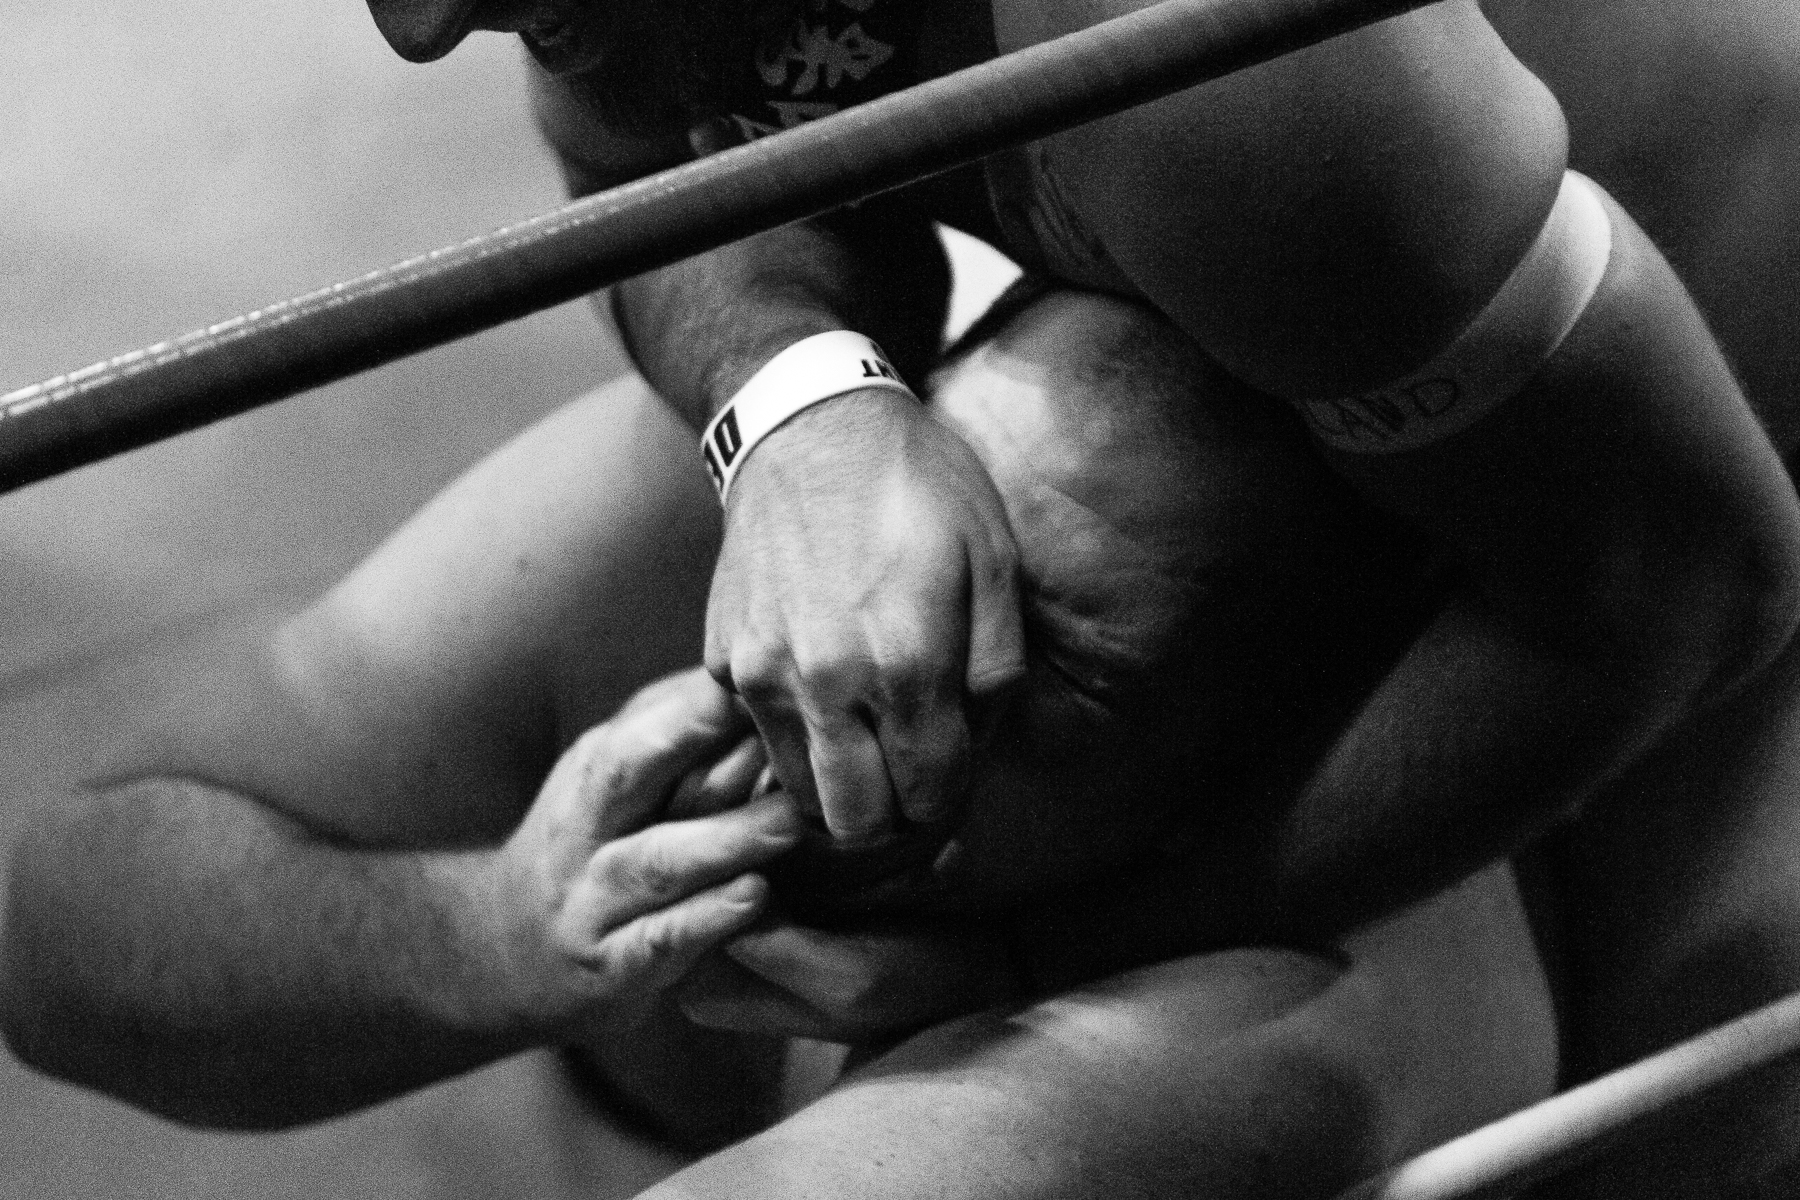 andre-hermann-wrestling-1.jpg